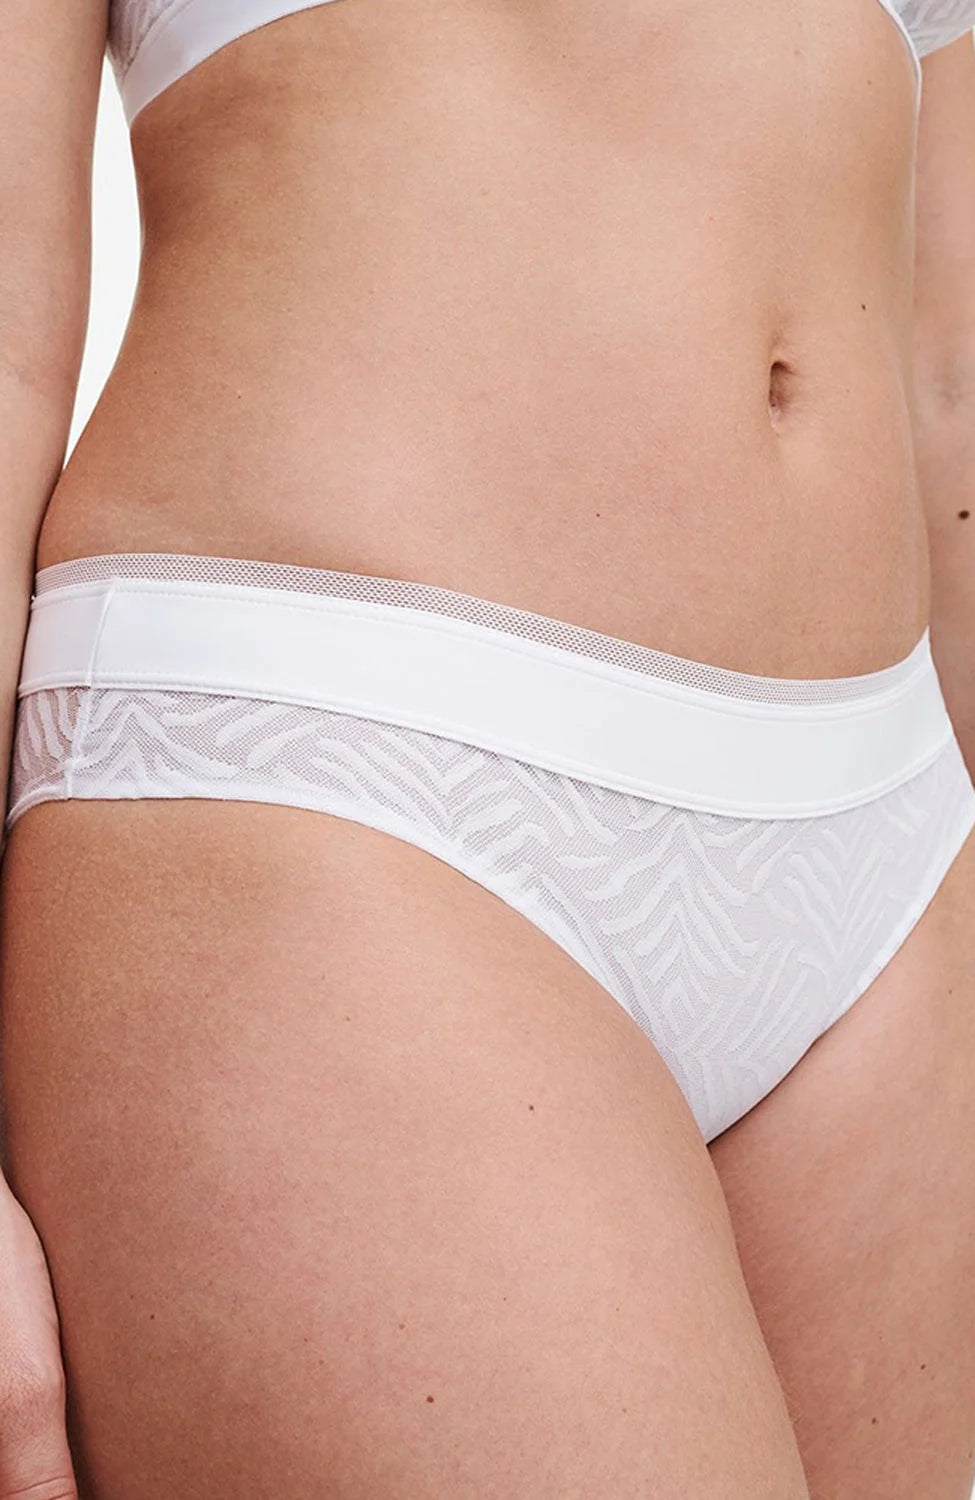 %shop_name_% Chantelle_Graphic Allure Brief _ Underwear_ 